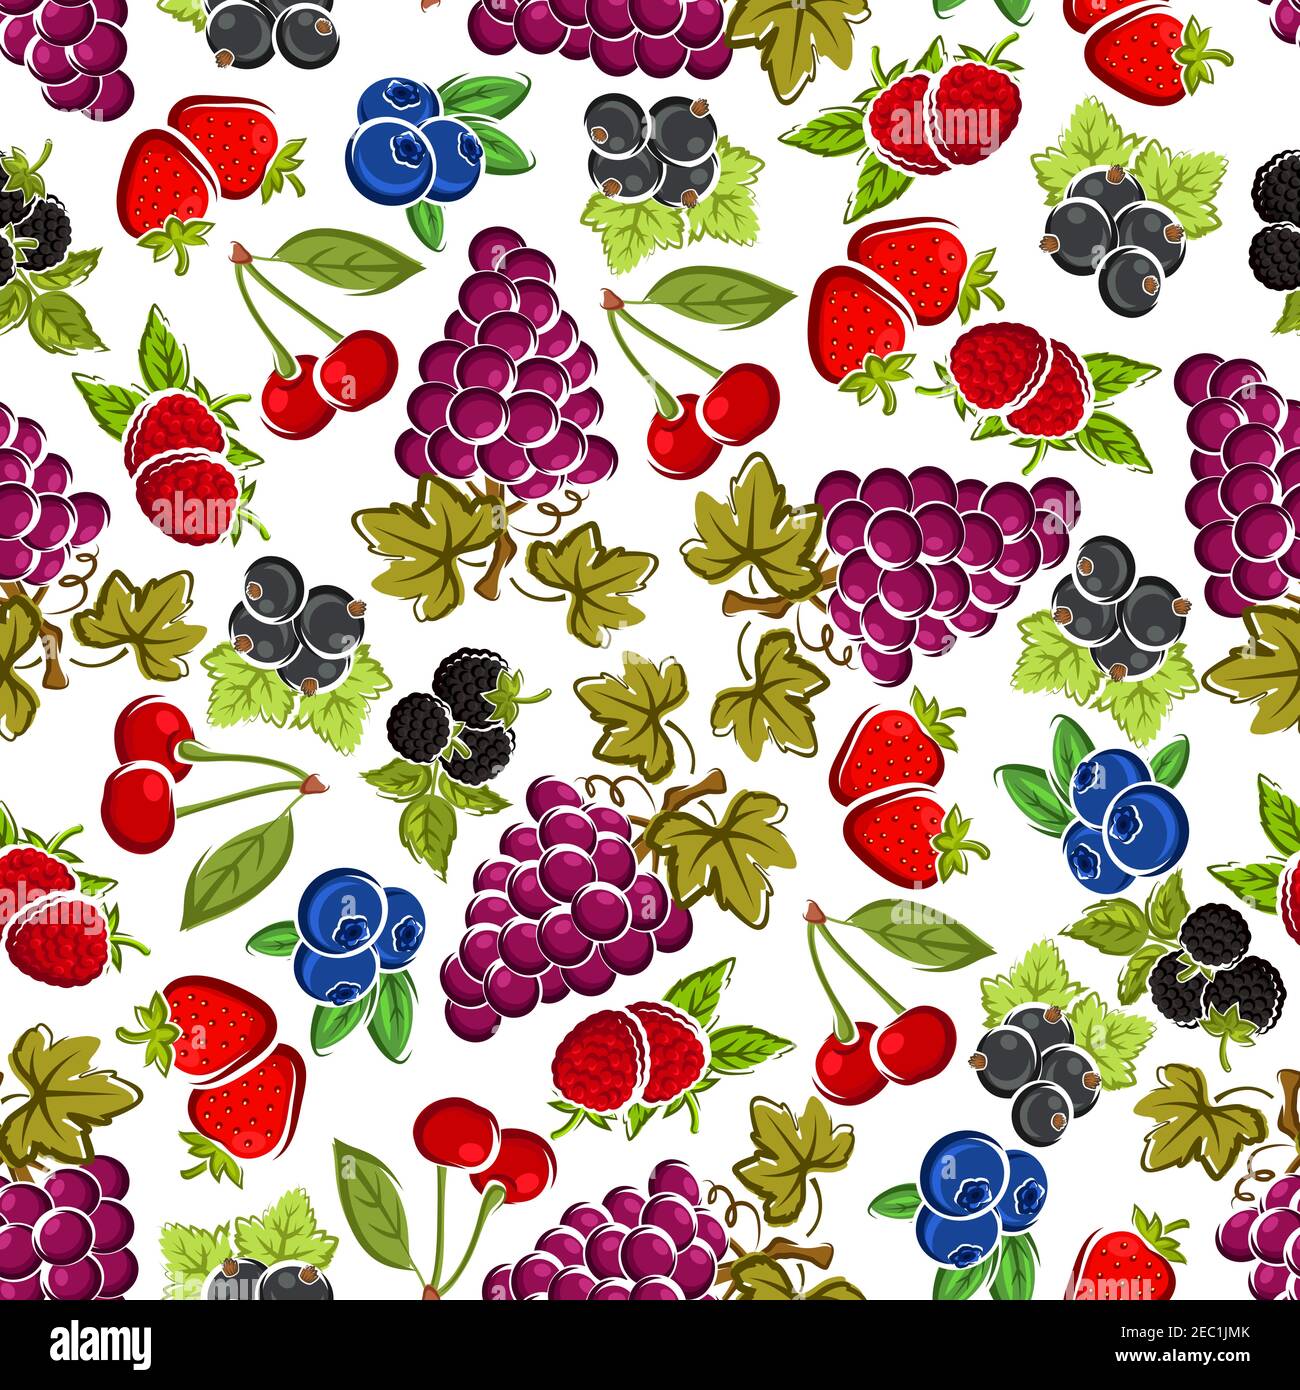 Erdbeere und Himbeere, violette Traube, Brombeere und Kirsche, schwarze Johannisbeere und Heidelbeerfrüchte nahtloses Muster mit geschnitzten Blättern und Stielen auf Whi Stock Vektor